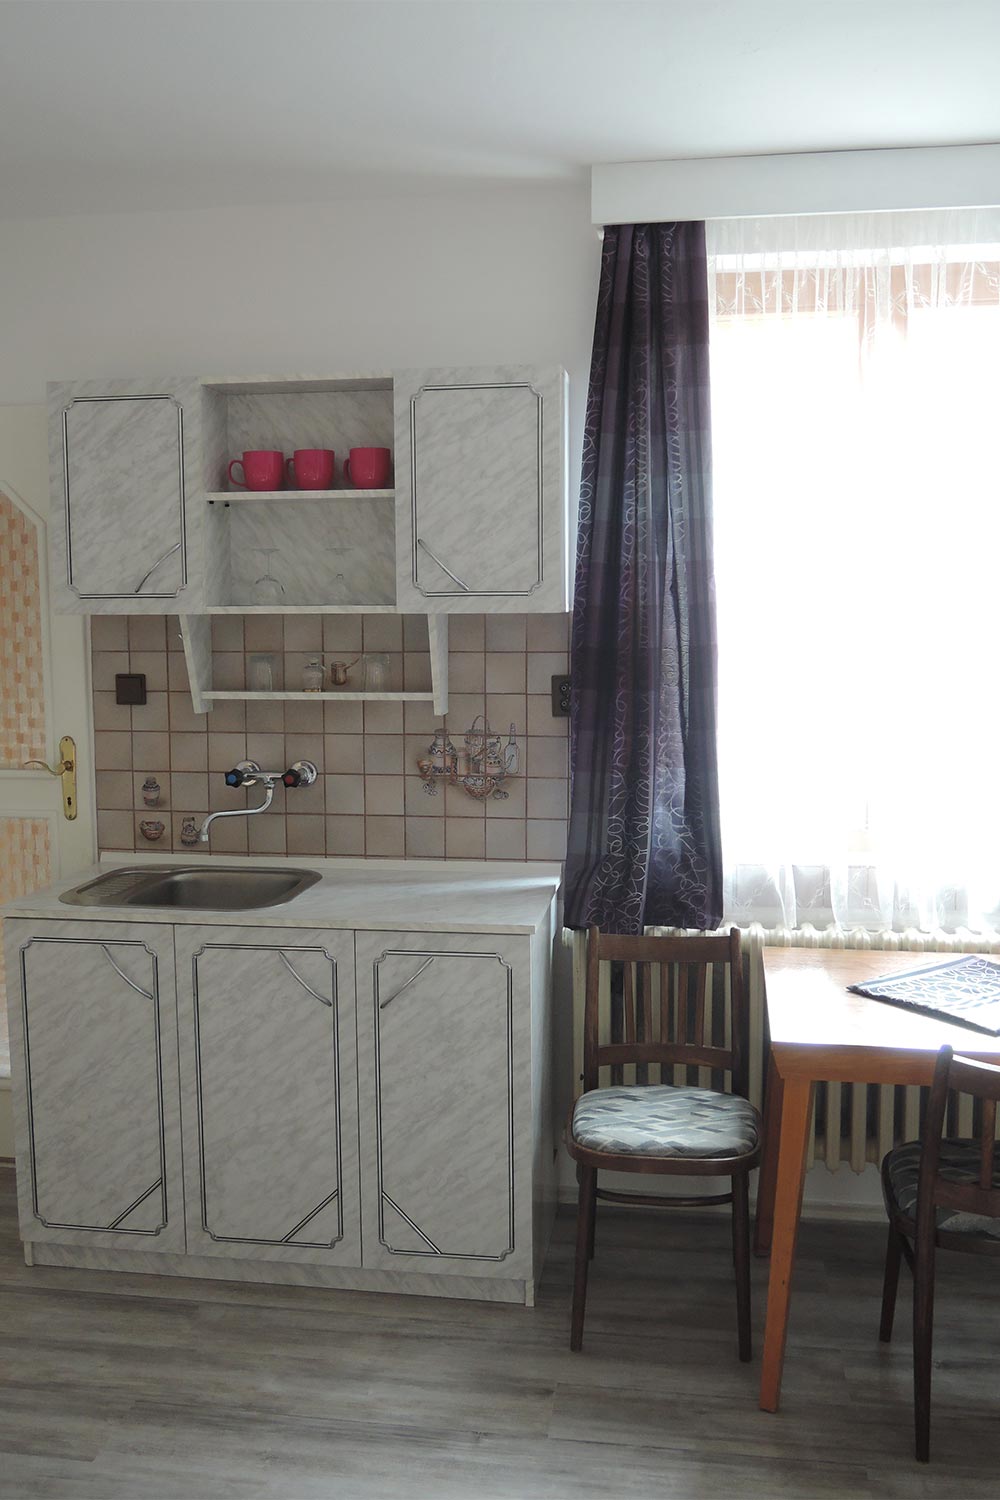 Dvojlůžkový pokoj s kuchyňkou - pohled na kuchyňku